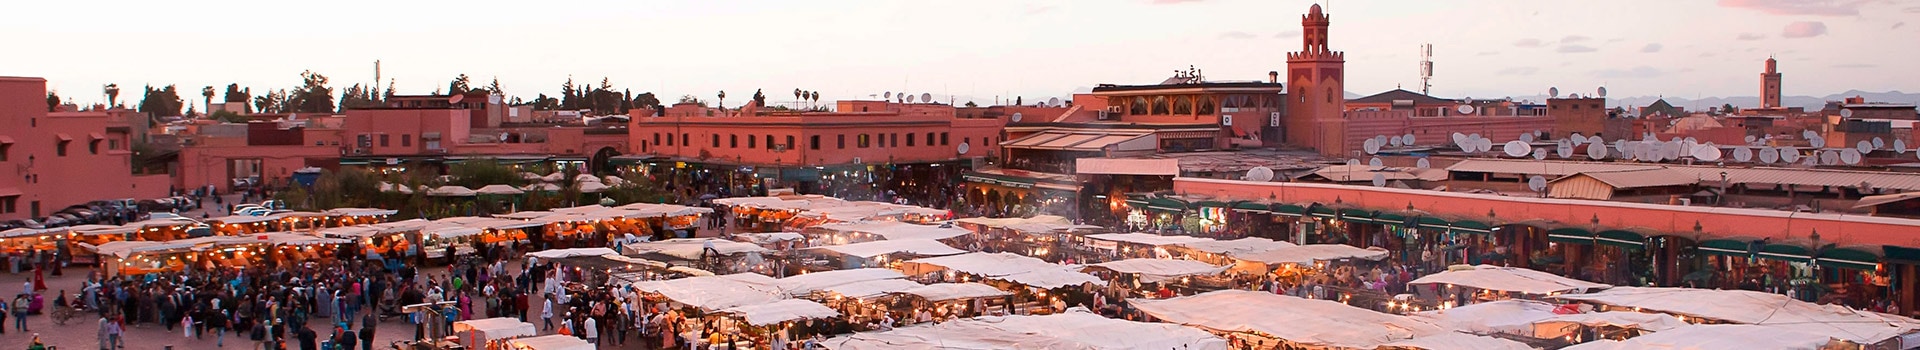 Sevilla - Marrakech